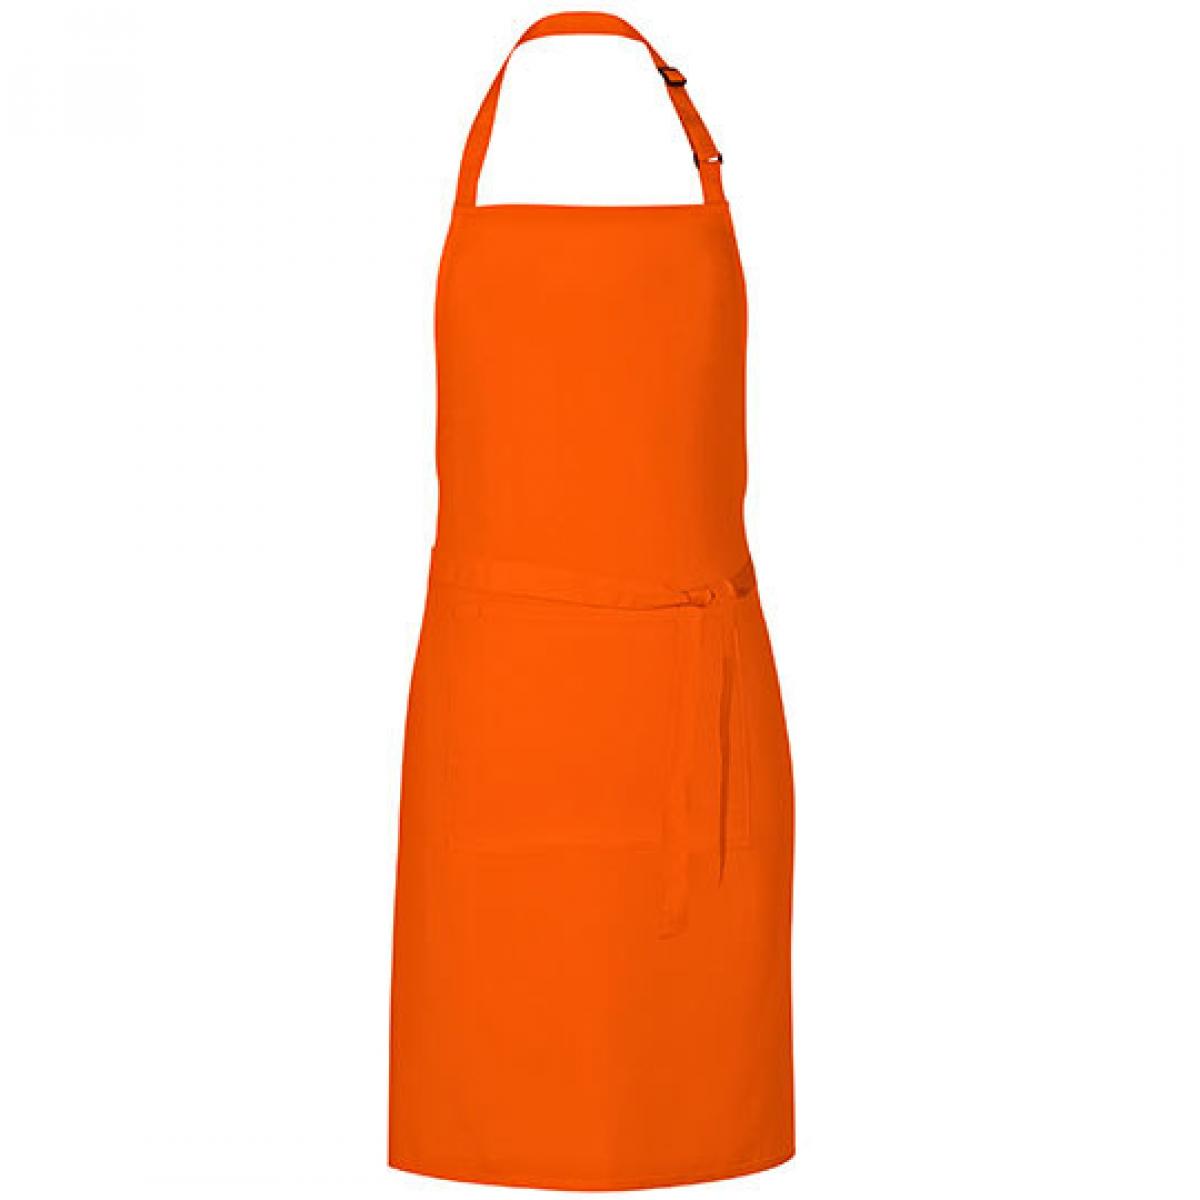 Hersteller: Link Kitchen Wear Herstellernummer: GS8572 Artikelbezeichnung: Grill Apron - 85 x 72 cm - Waschbar bis 60 °C Farbe: Orange (ca. Pantone 1655)